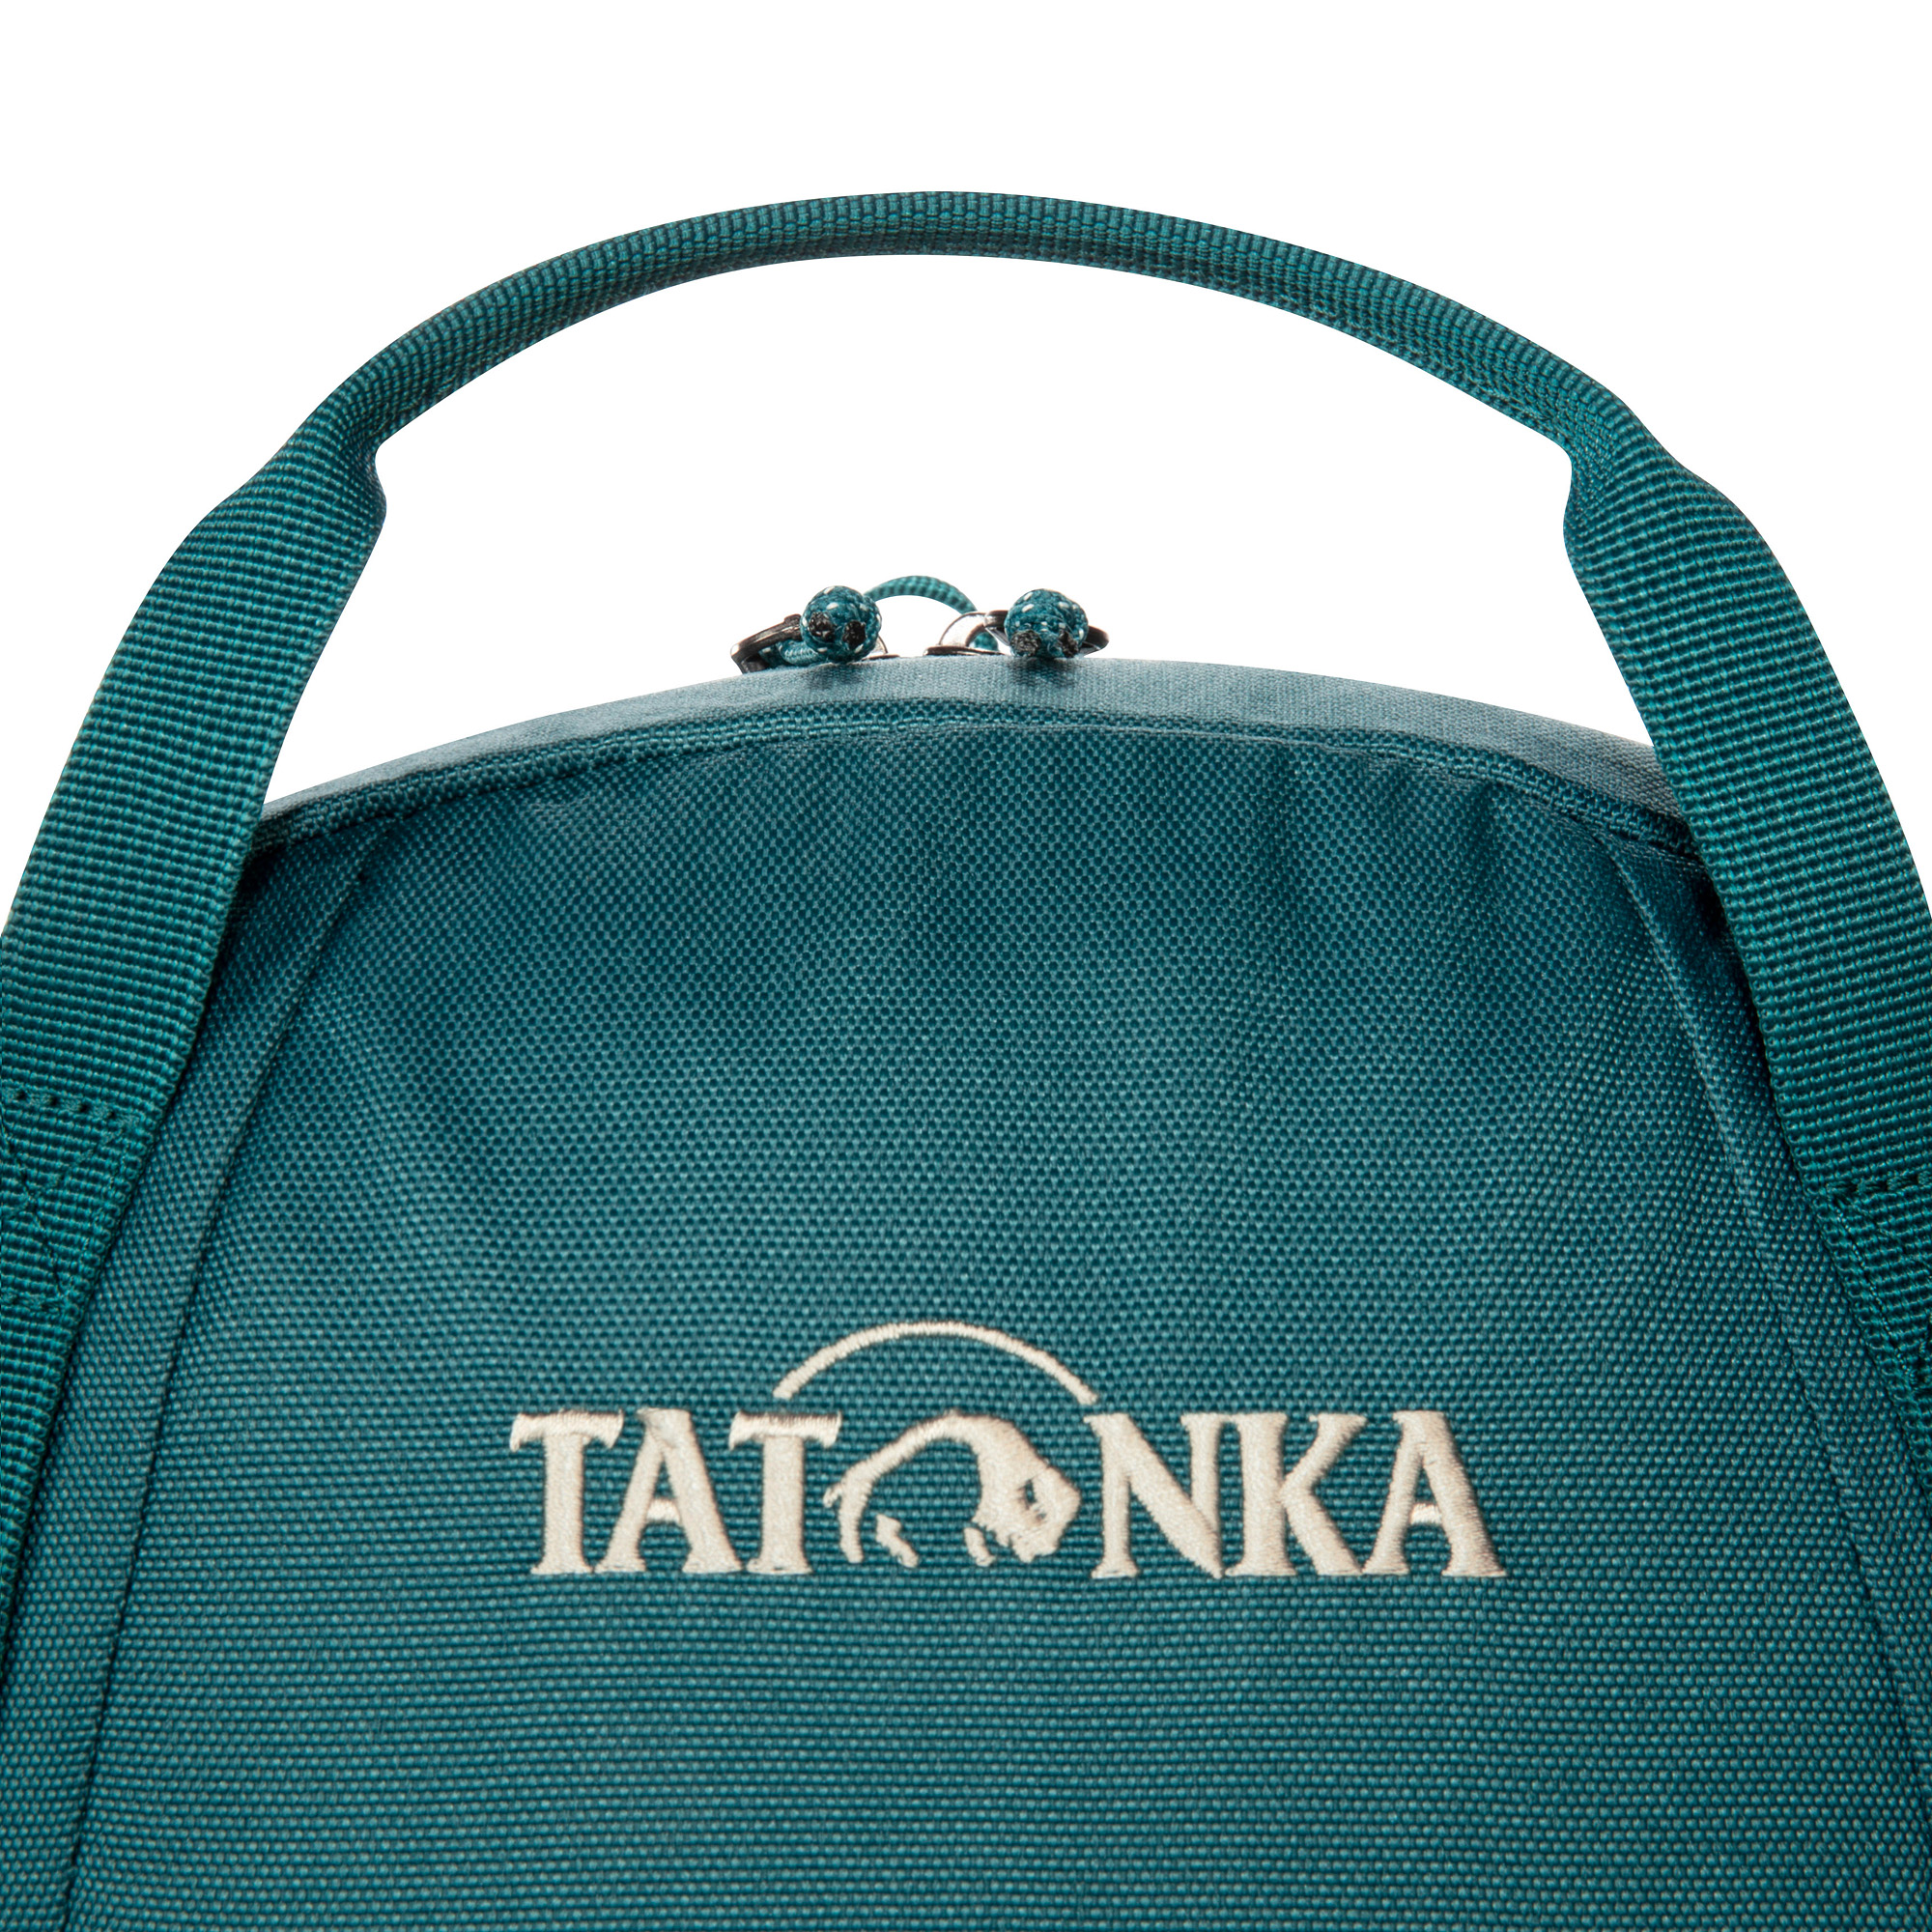 Tatonka City Pack 15 teal green / jasper grün Tagesrucksäcke 4013236383188